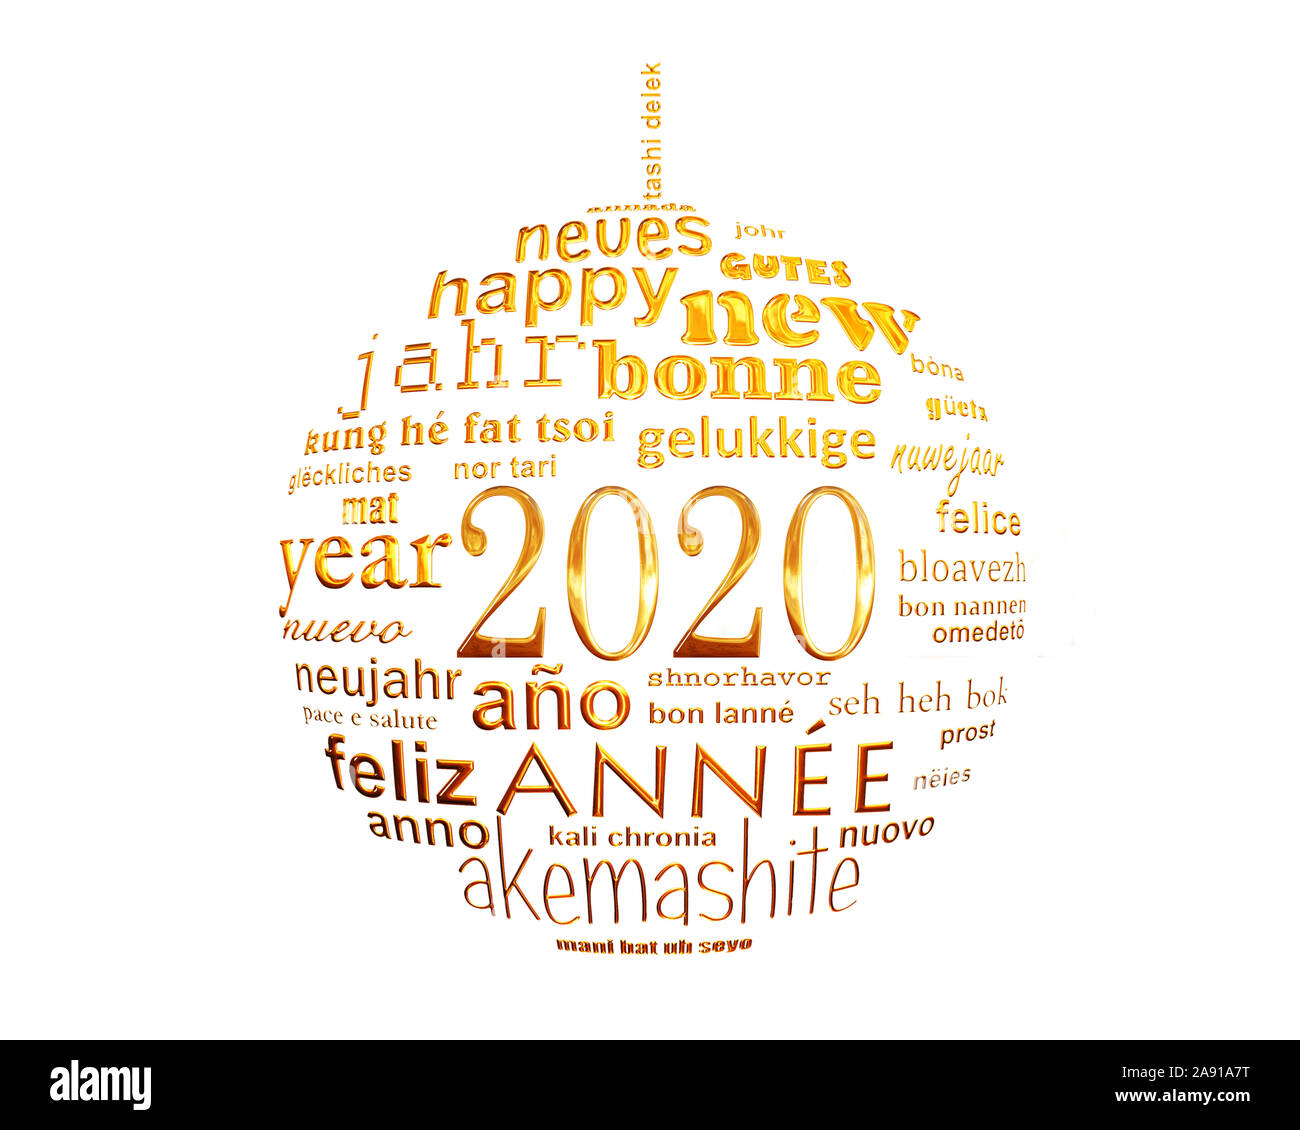 Nouvelle année 2020 et l'or blanc nuage de mots de texte multilingue carte de vœux en forme de boule de noël Banque D'Images